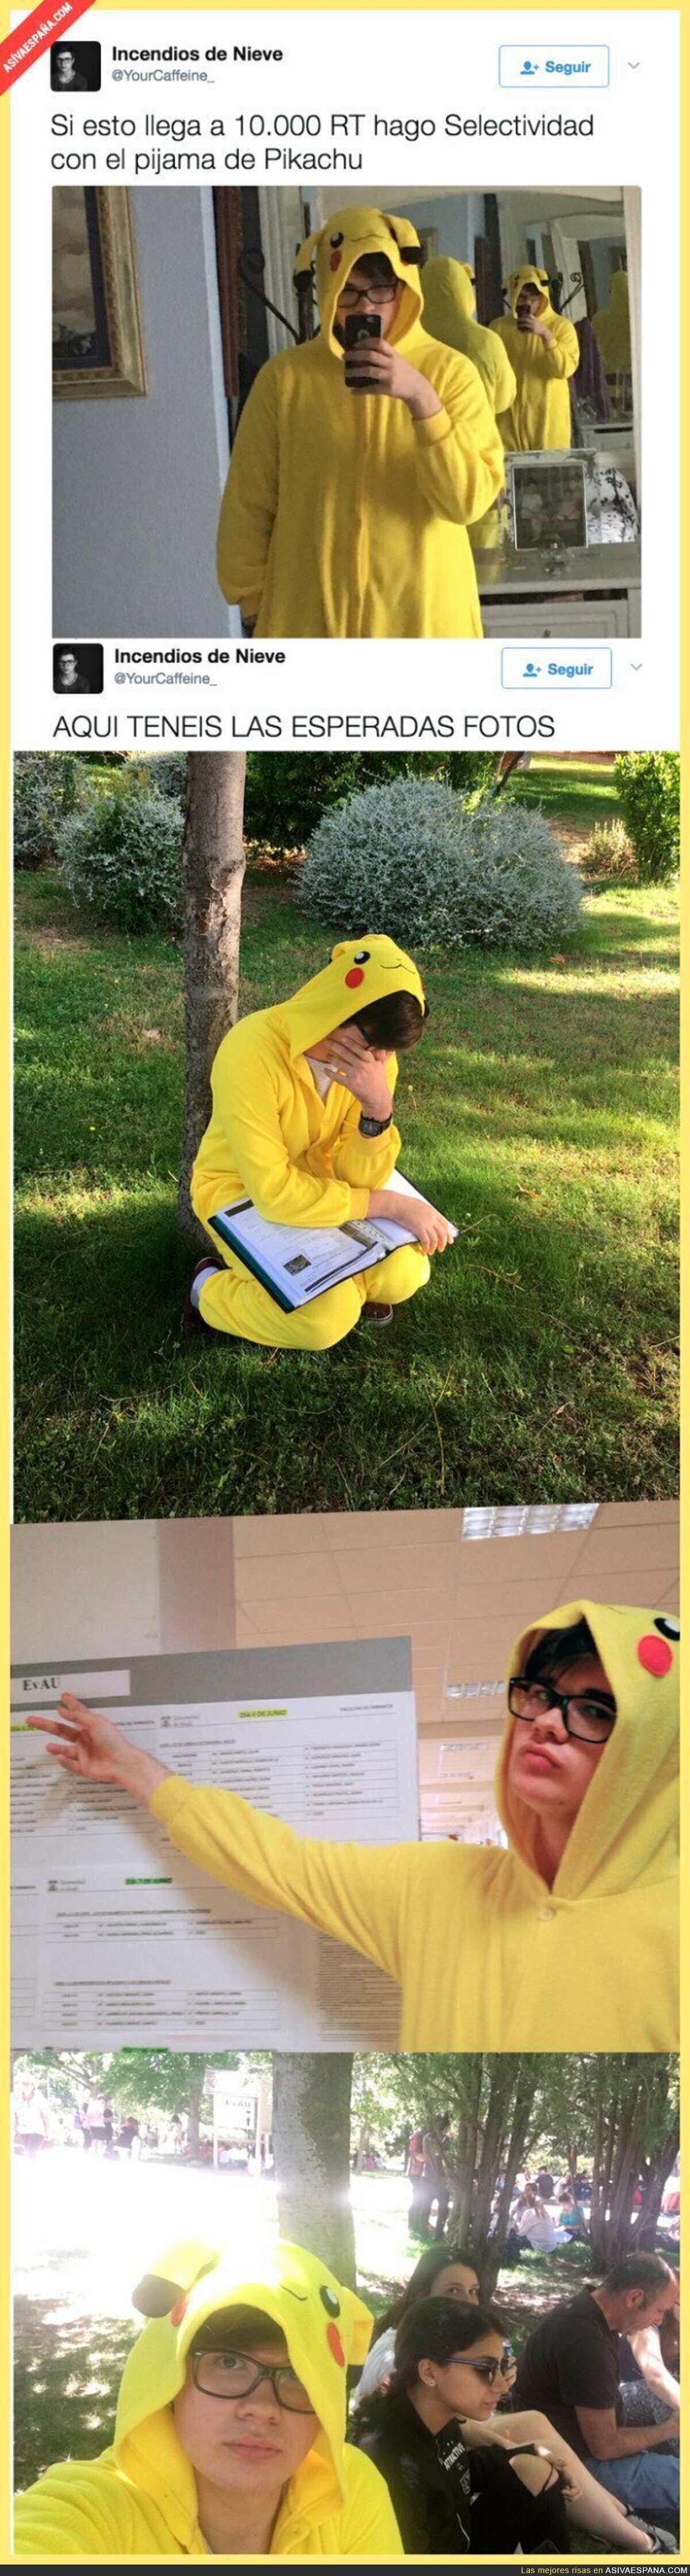 Este chico va disfrazado de Pikachu a la Selectividad tras perder la apuesta que hizo en Twitter